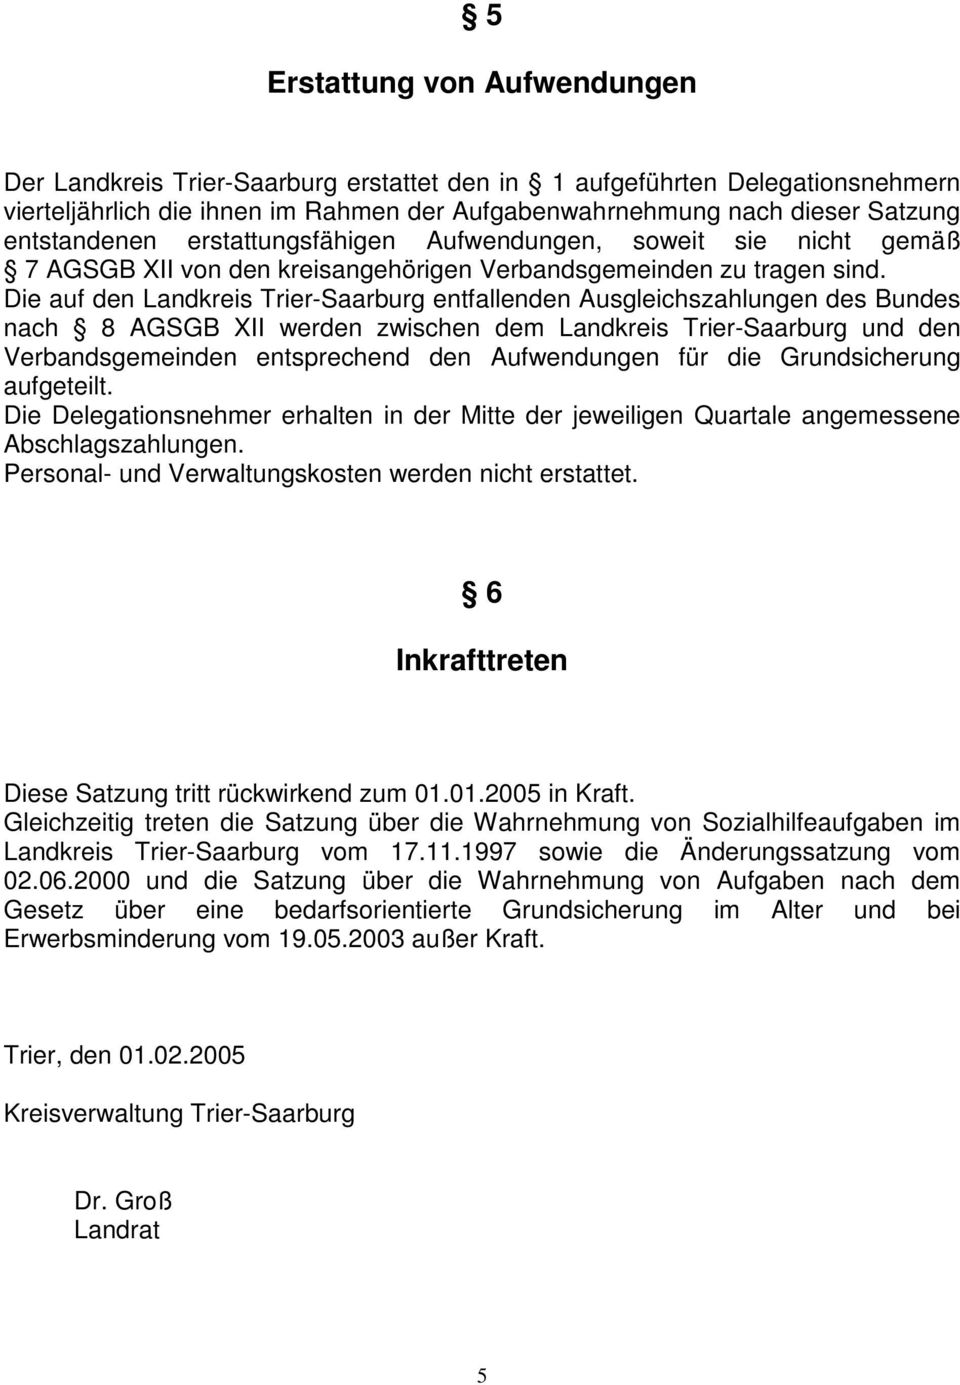 Die auf den Landkreis Trier-Saarburg entfallenden Ausgleichszahlungen des Bundes nach 8 AGSGB XII werden zwischen dem Landkreis Trier-Saarburg und den Verbandsgemeinden entsprechend den Aufwendungen